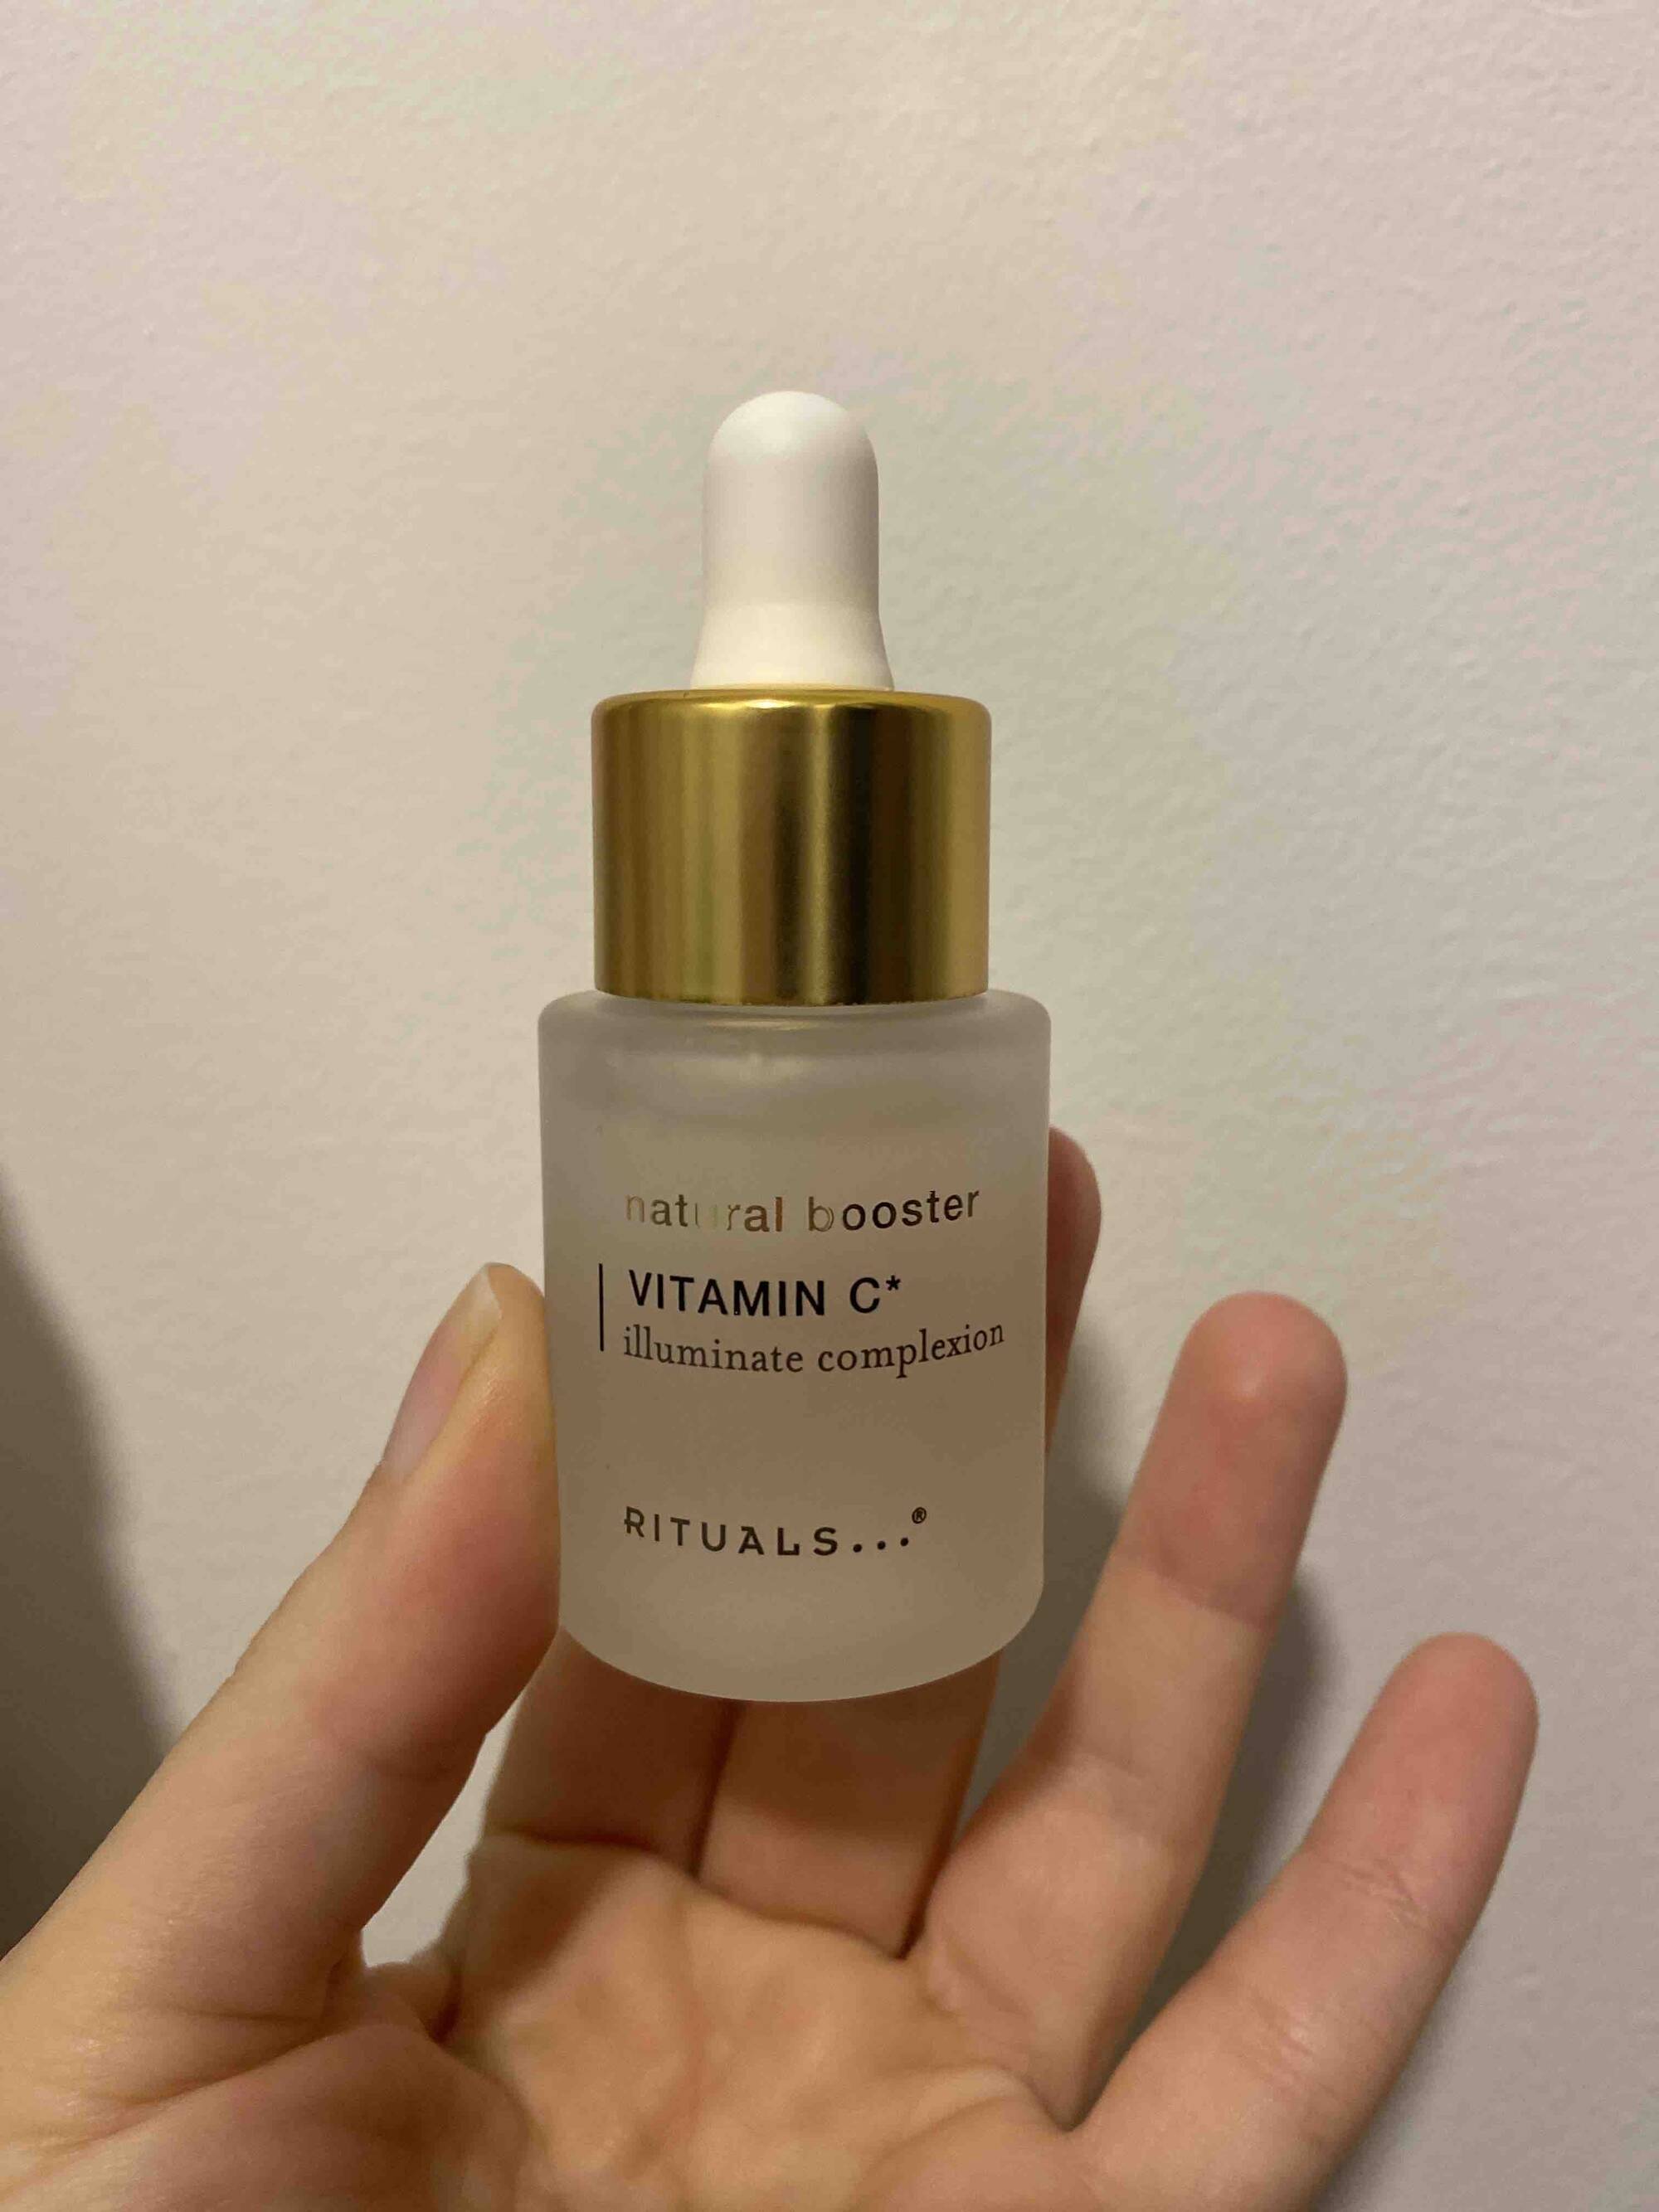 RITUALS - Natural booster - Vitamin C illuminate complexion